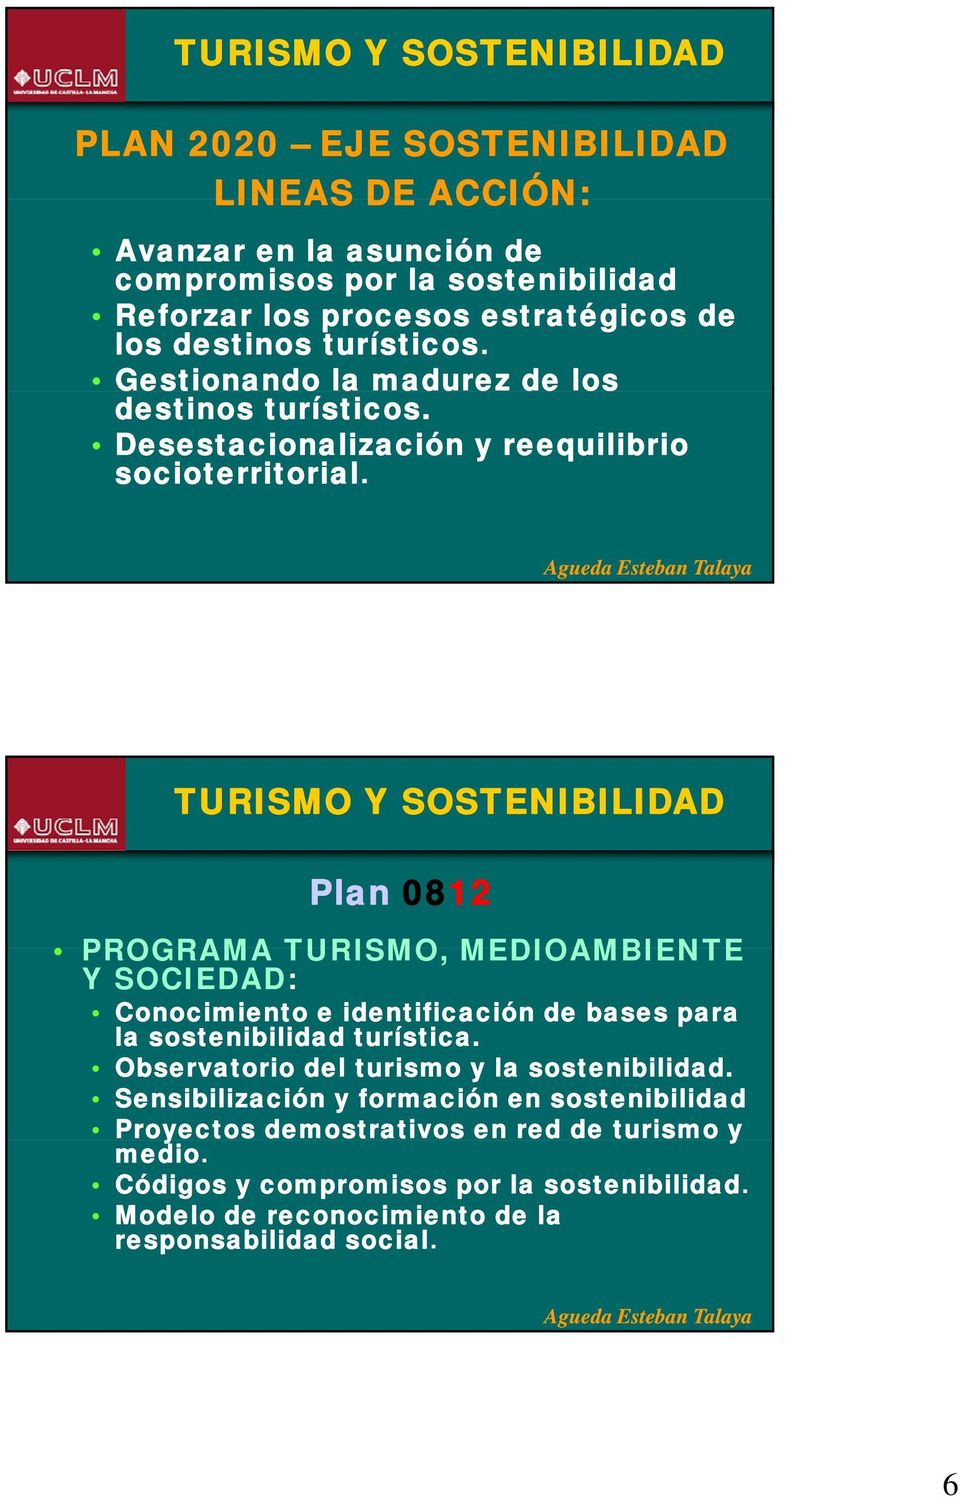 Plan 0812 PROGRAMA TURISMO, MEDIOAMBIENTE Y SOCIEDAD: Conocimiento e identificación de bases para la sostenibilidad turística.